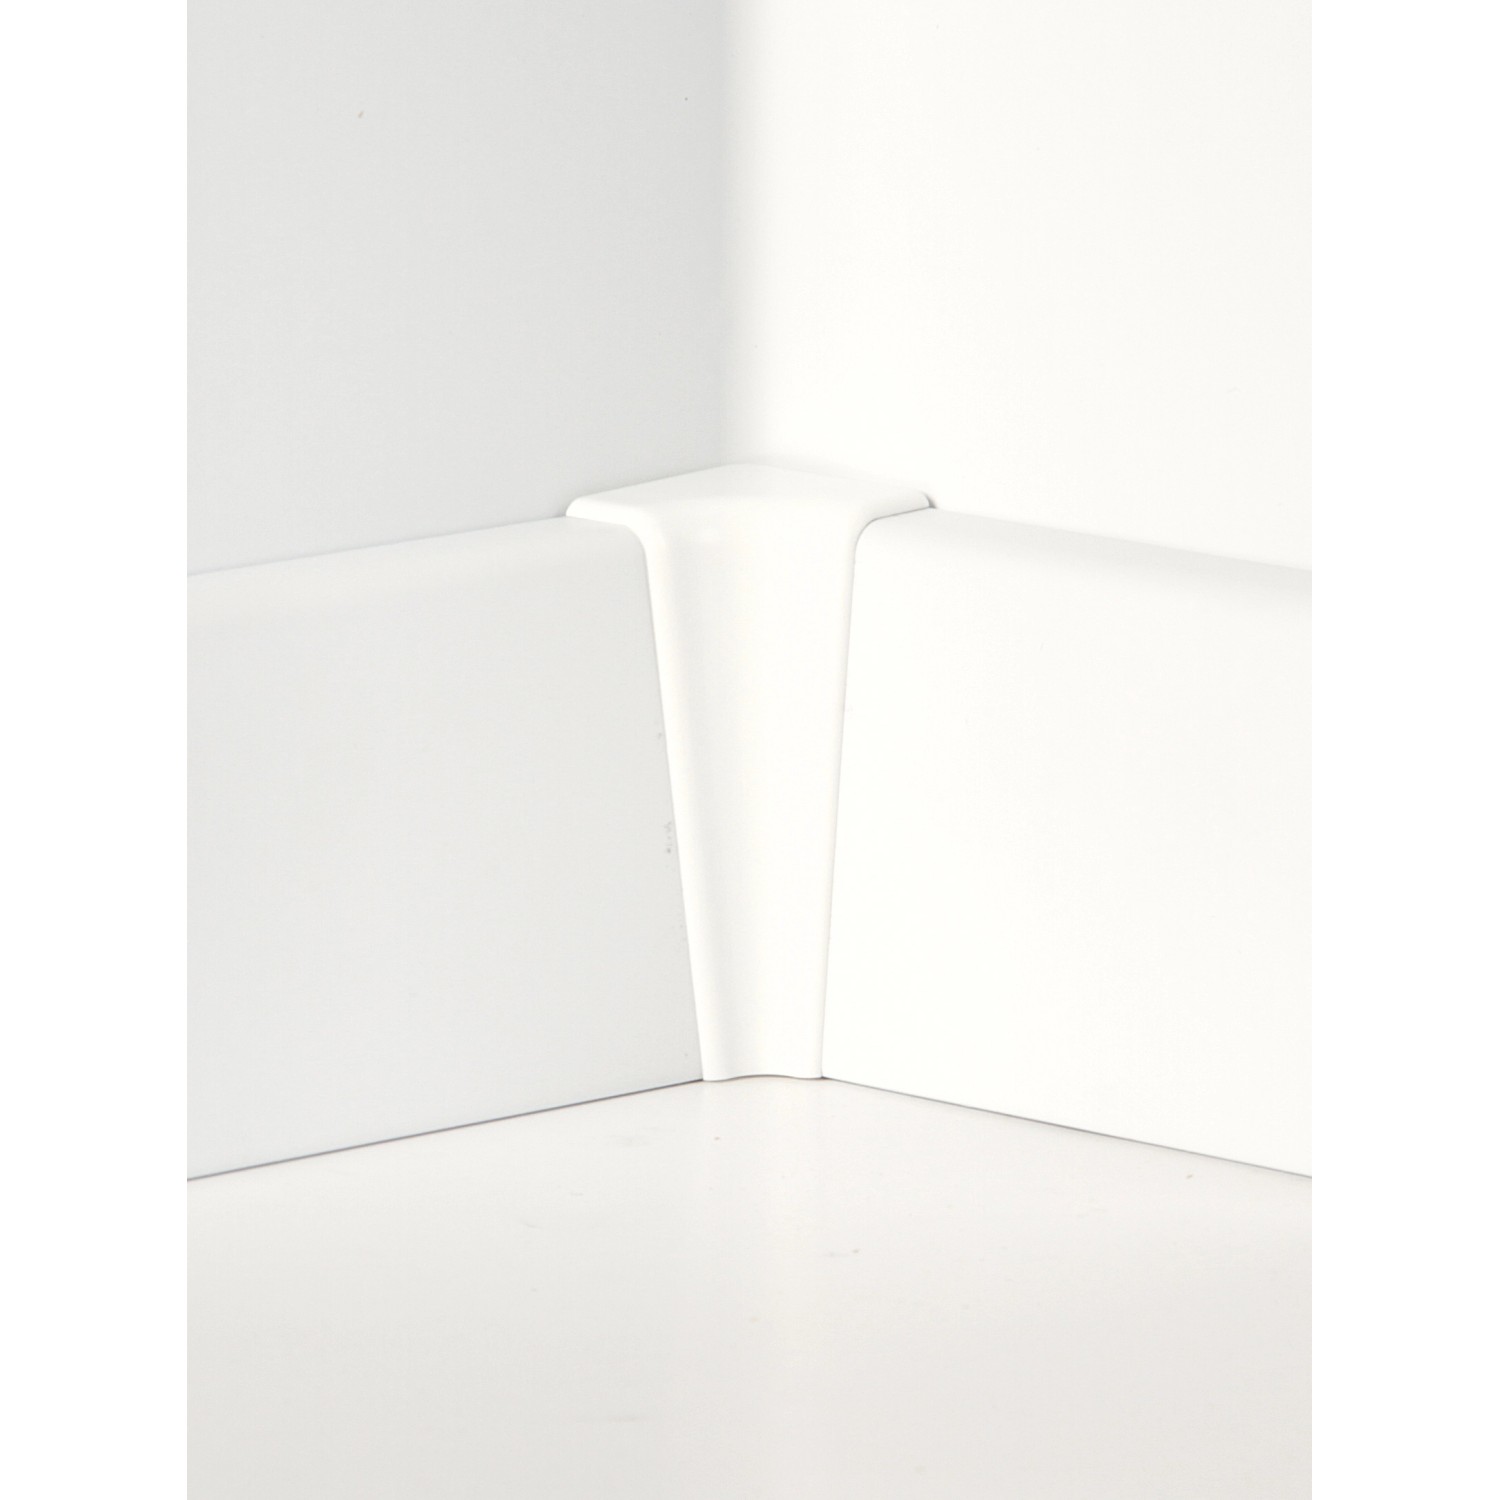 Innenecken für Sockelleiste Neo Prime Weiß